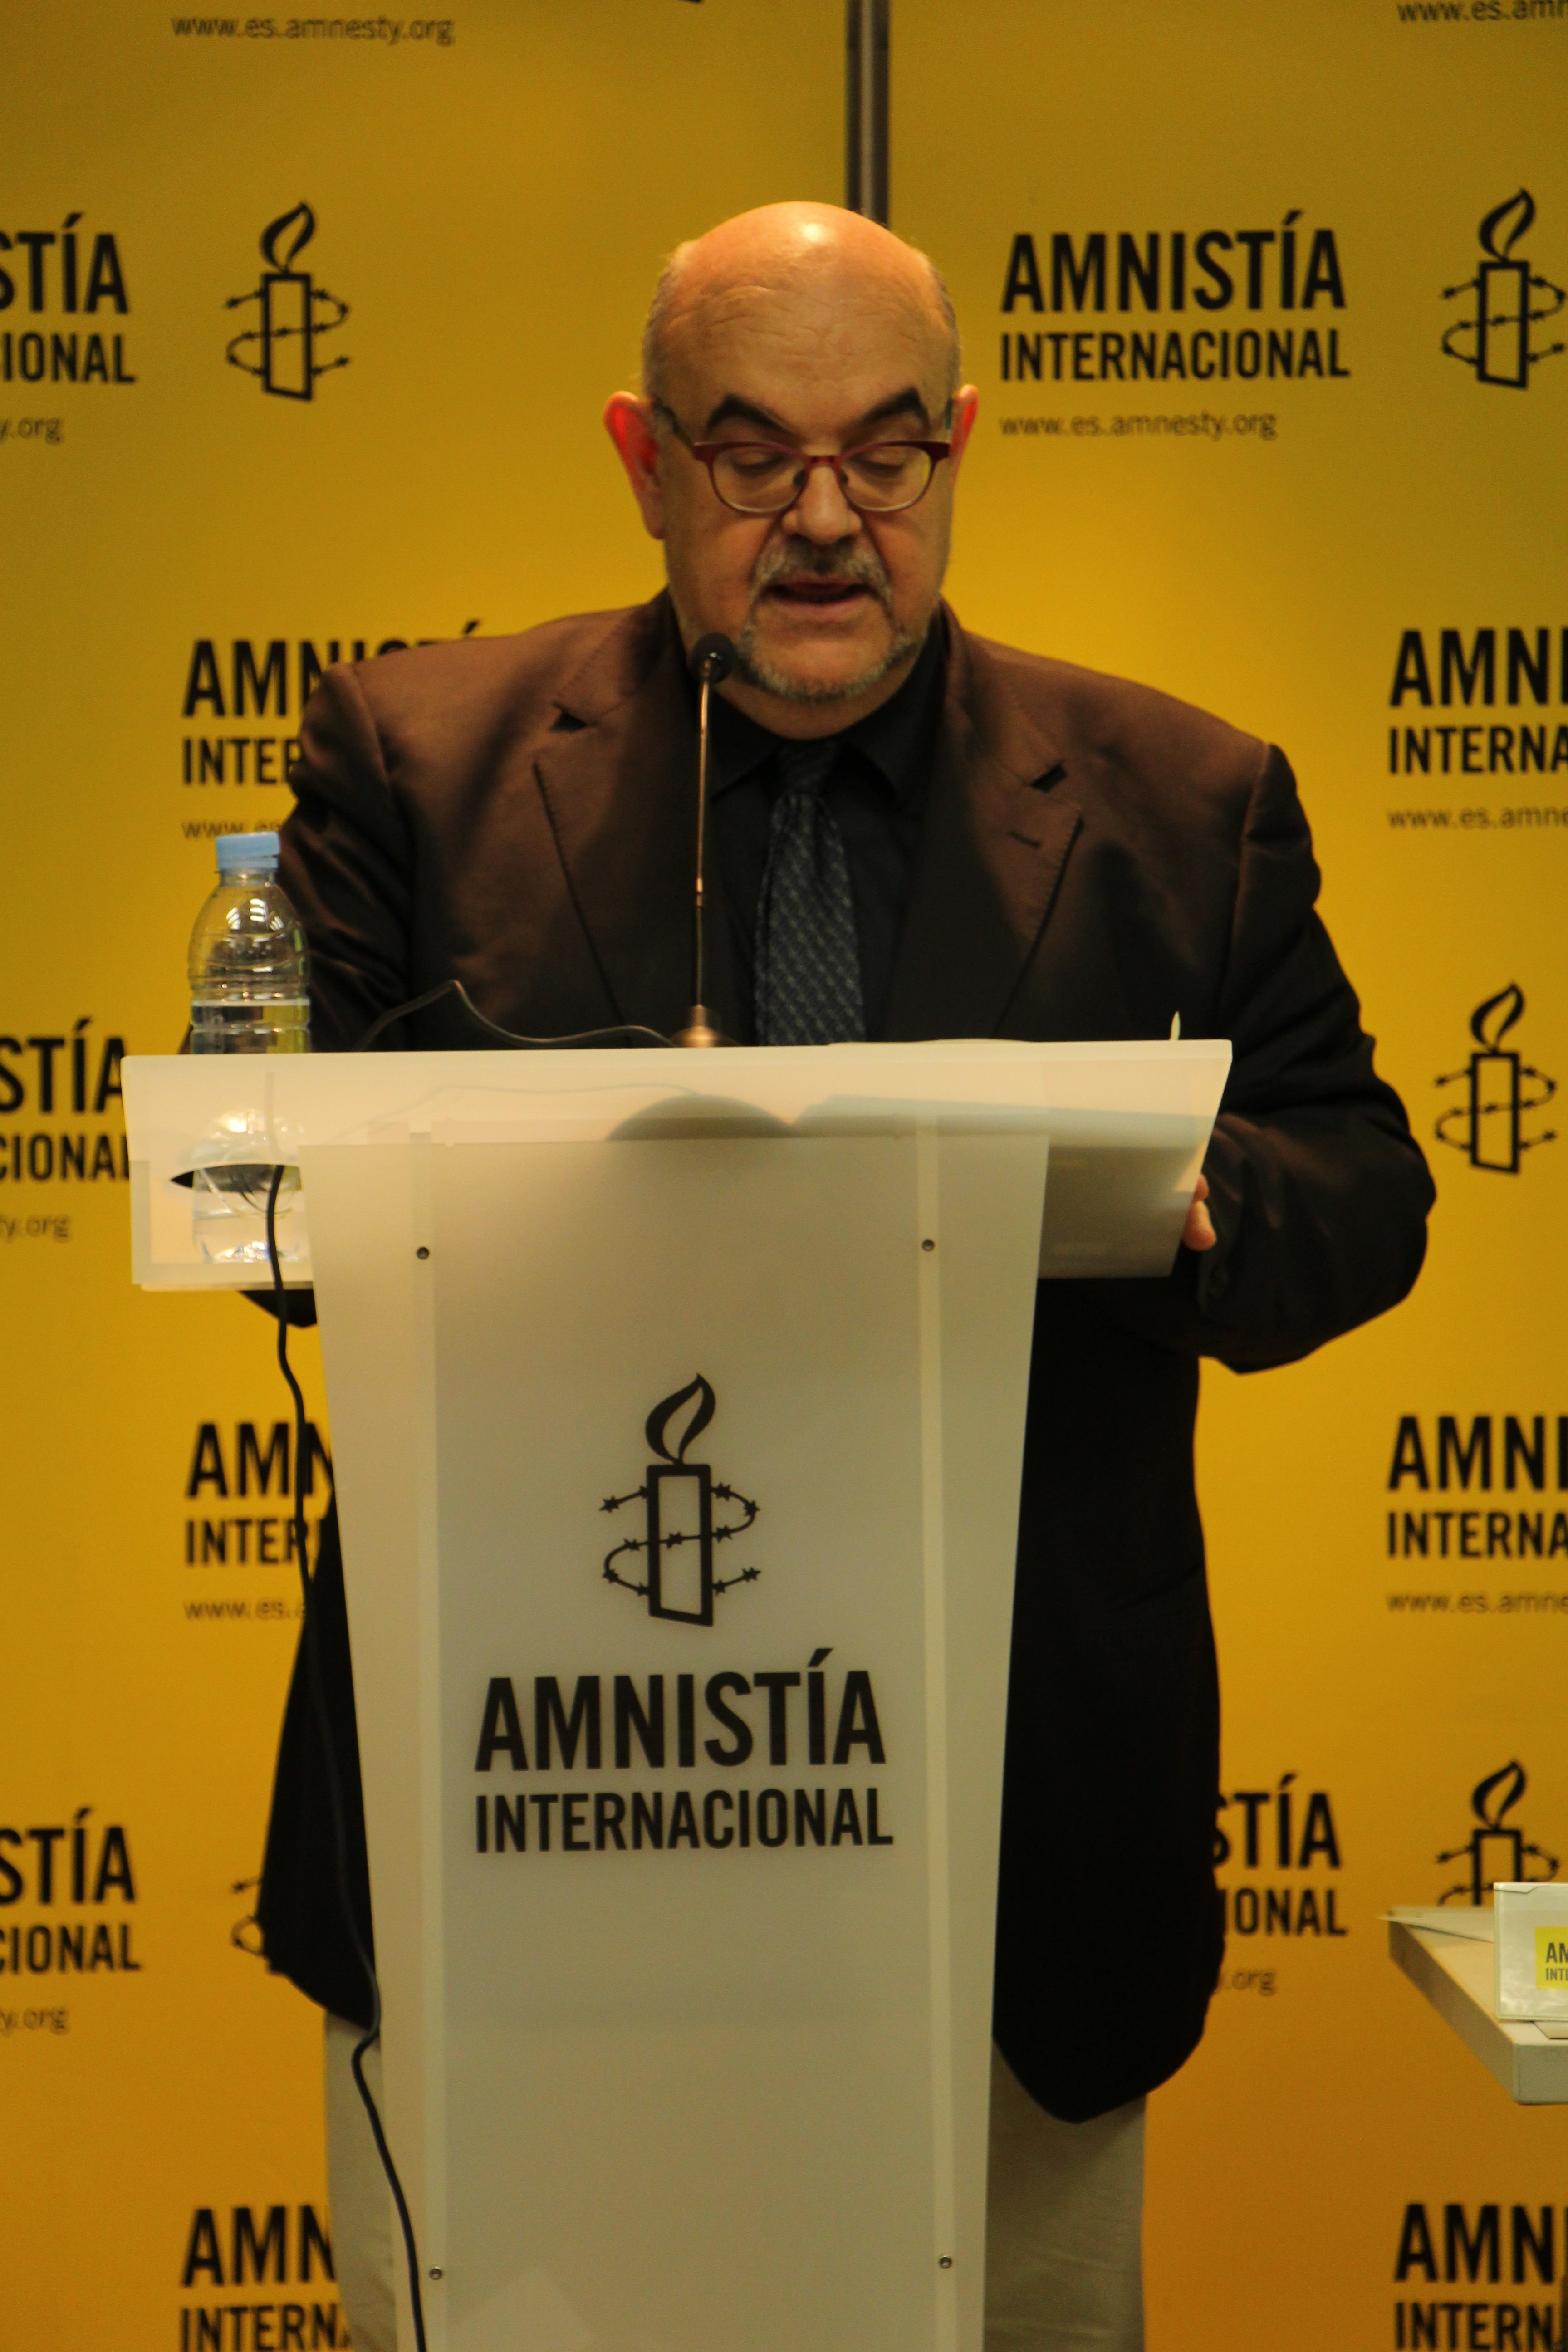 Esteban Beltrán, director de la sección española de Amnistía Internacional